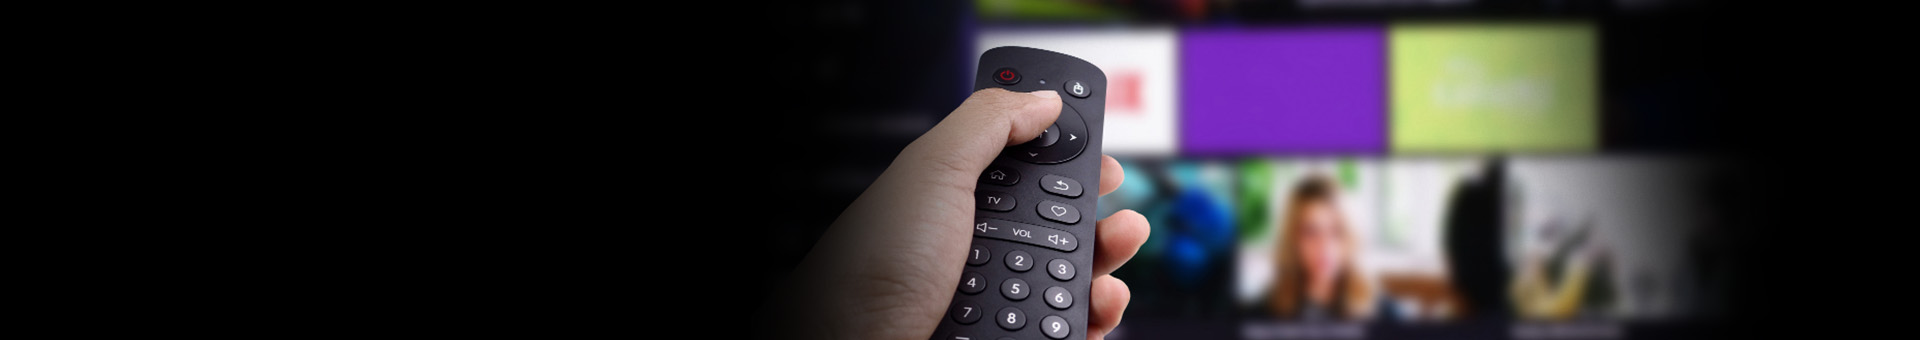 Telewizja IPTV a OTT – co to jest? Czym się różnią?